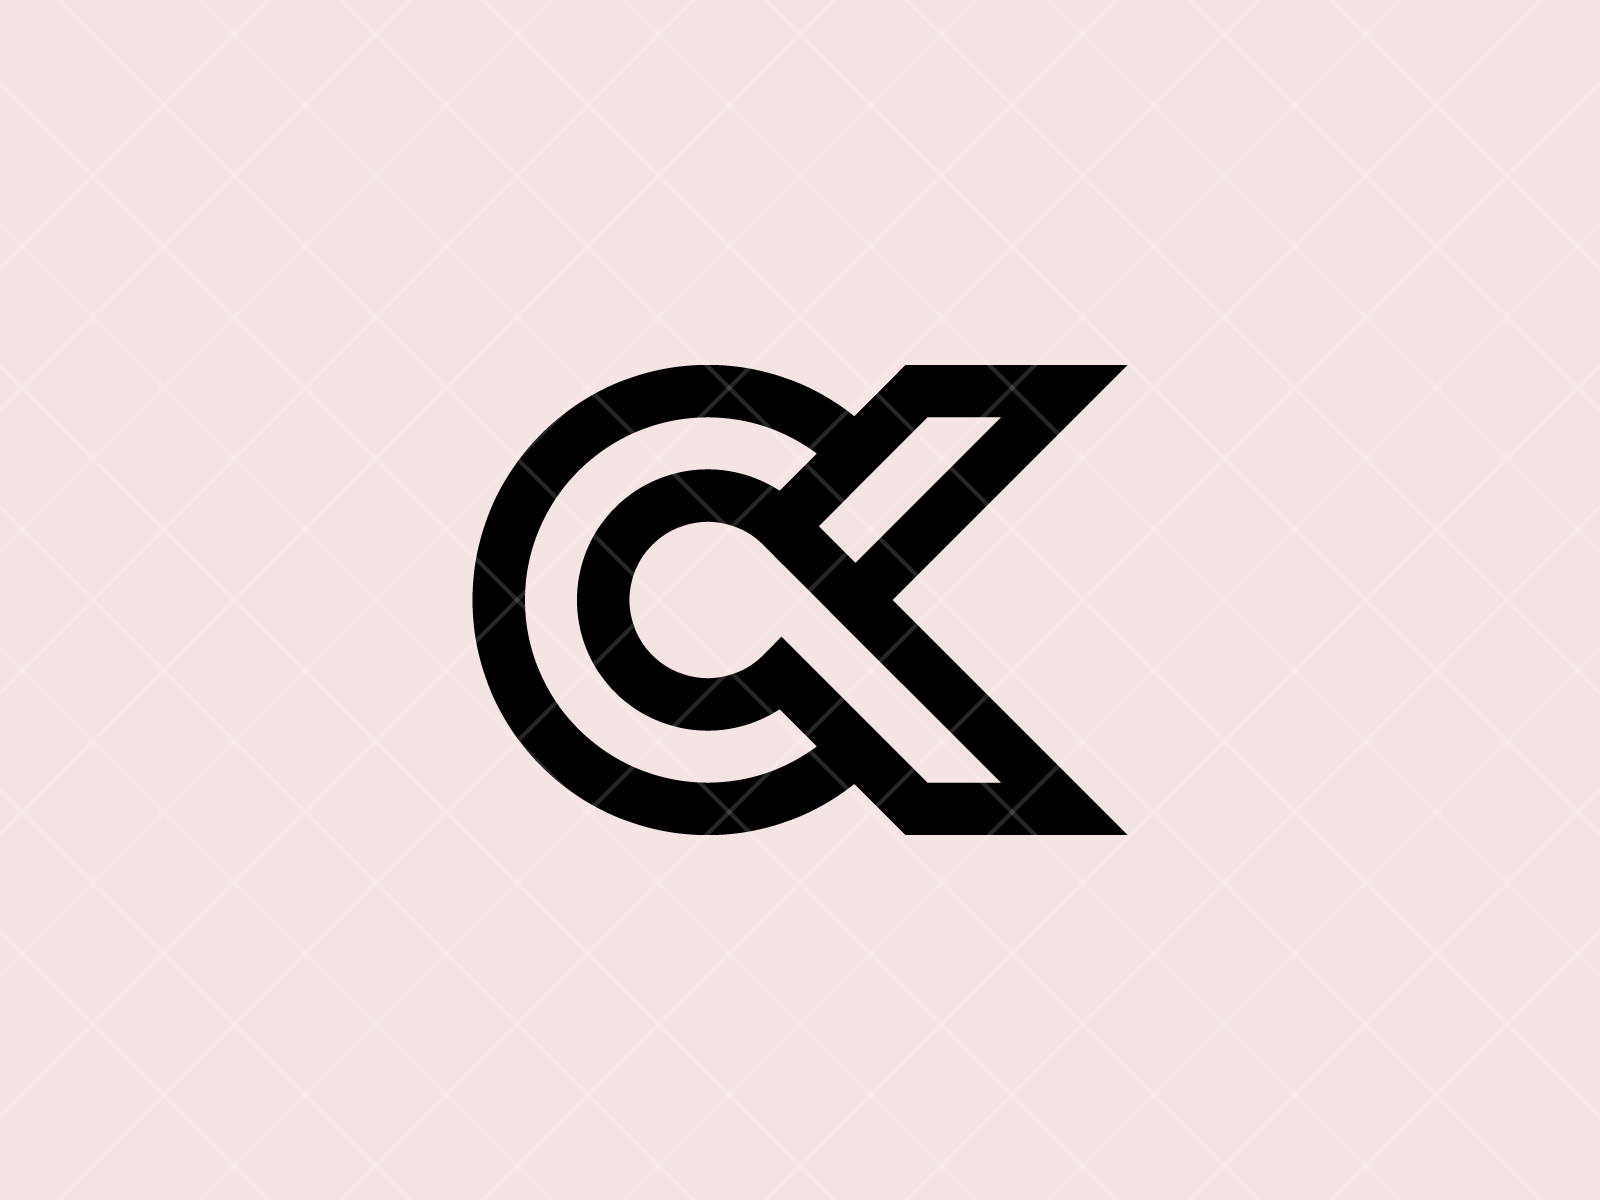 Ck logo design Free Stock Vectors